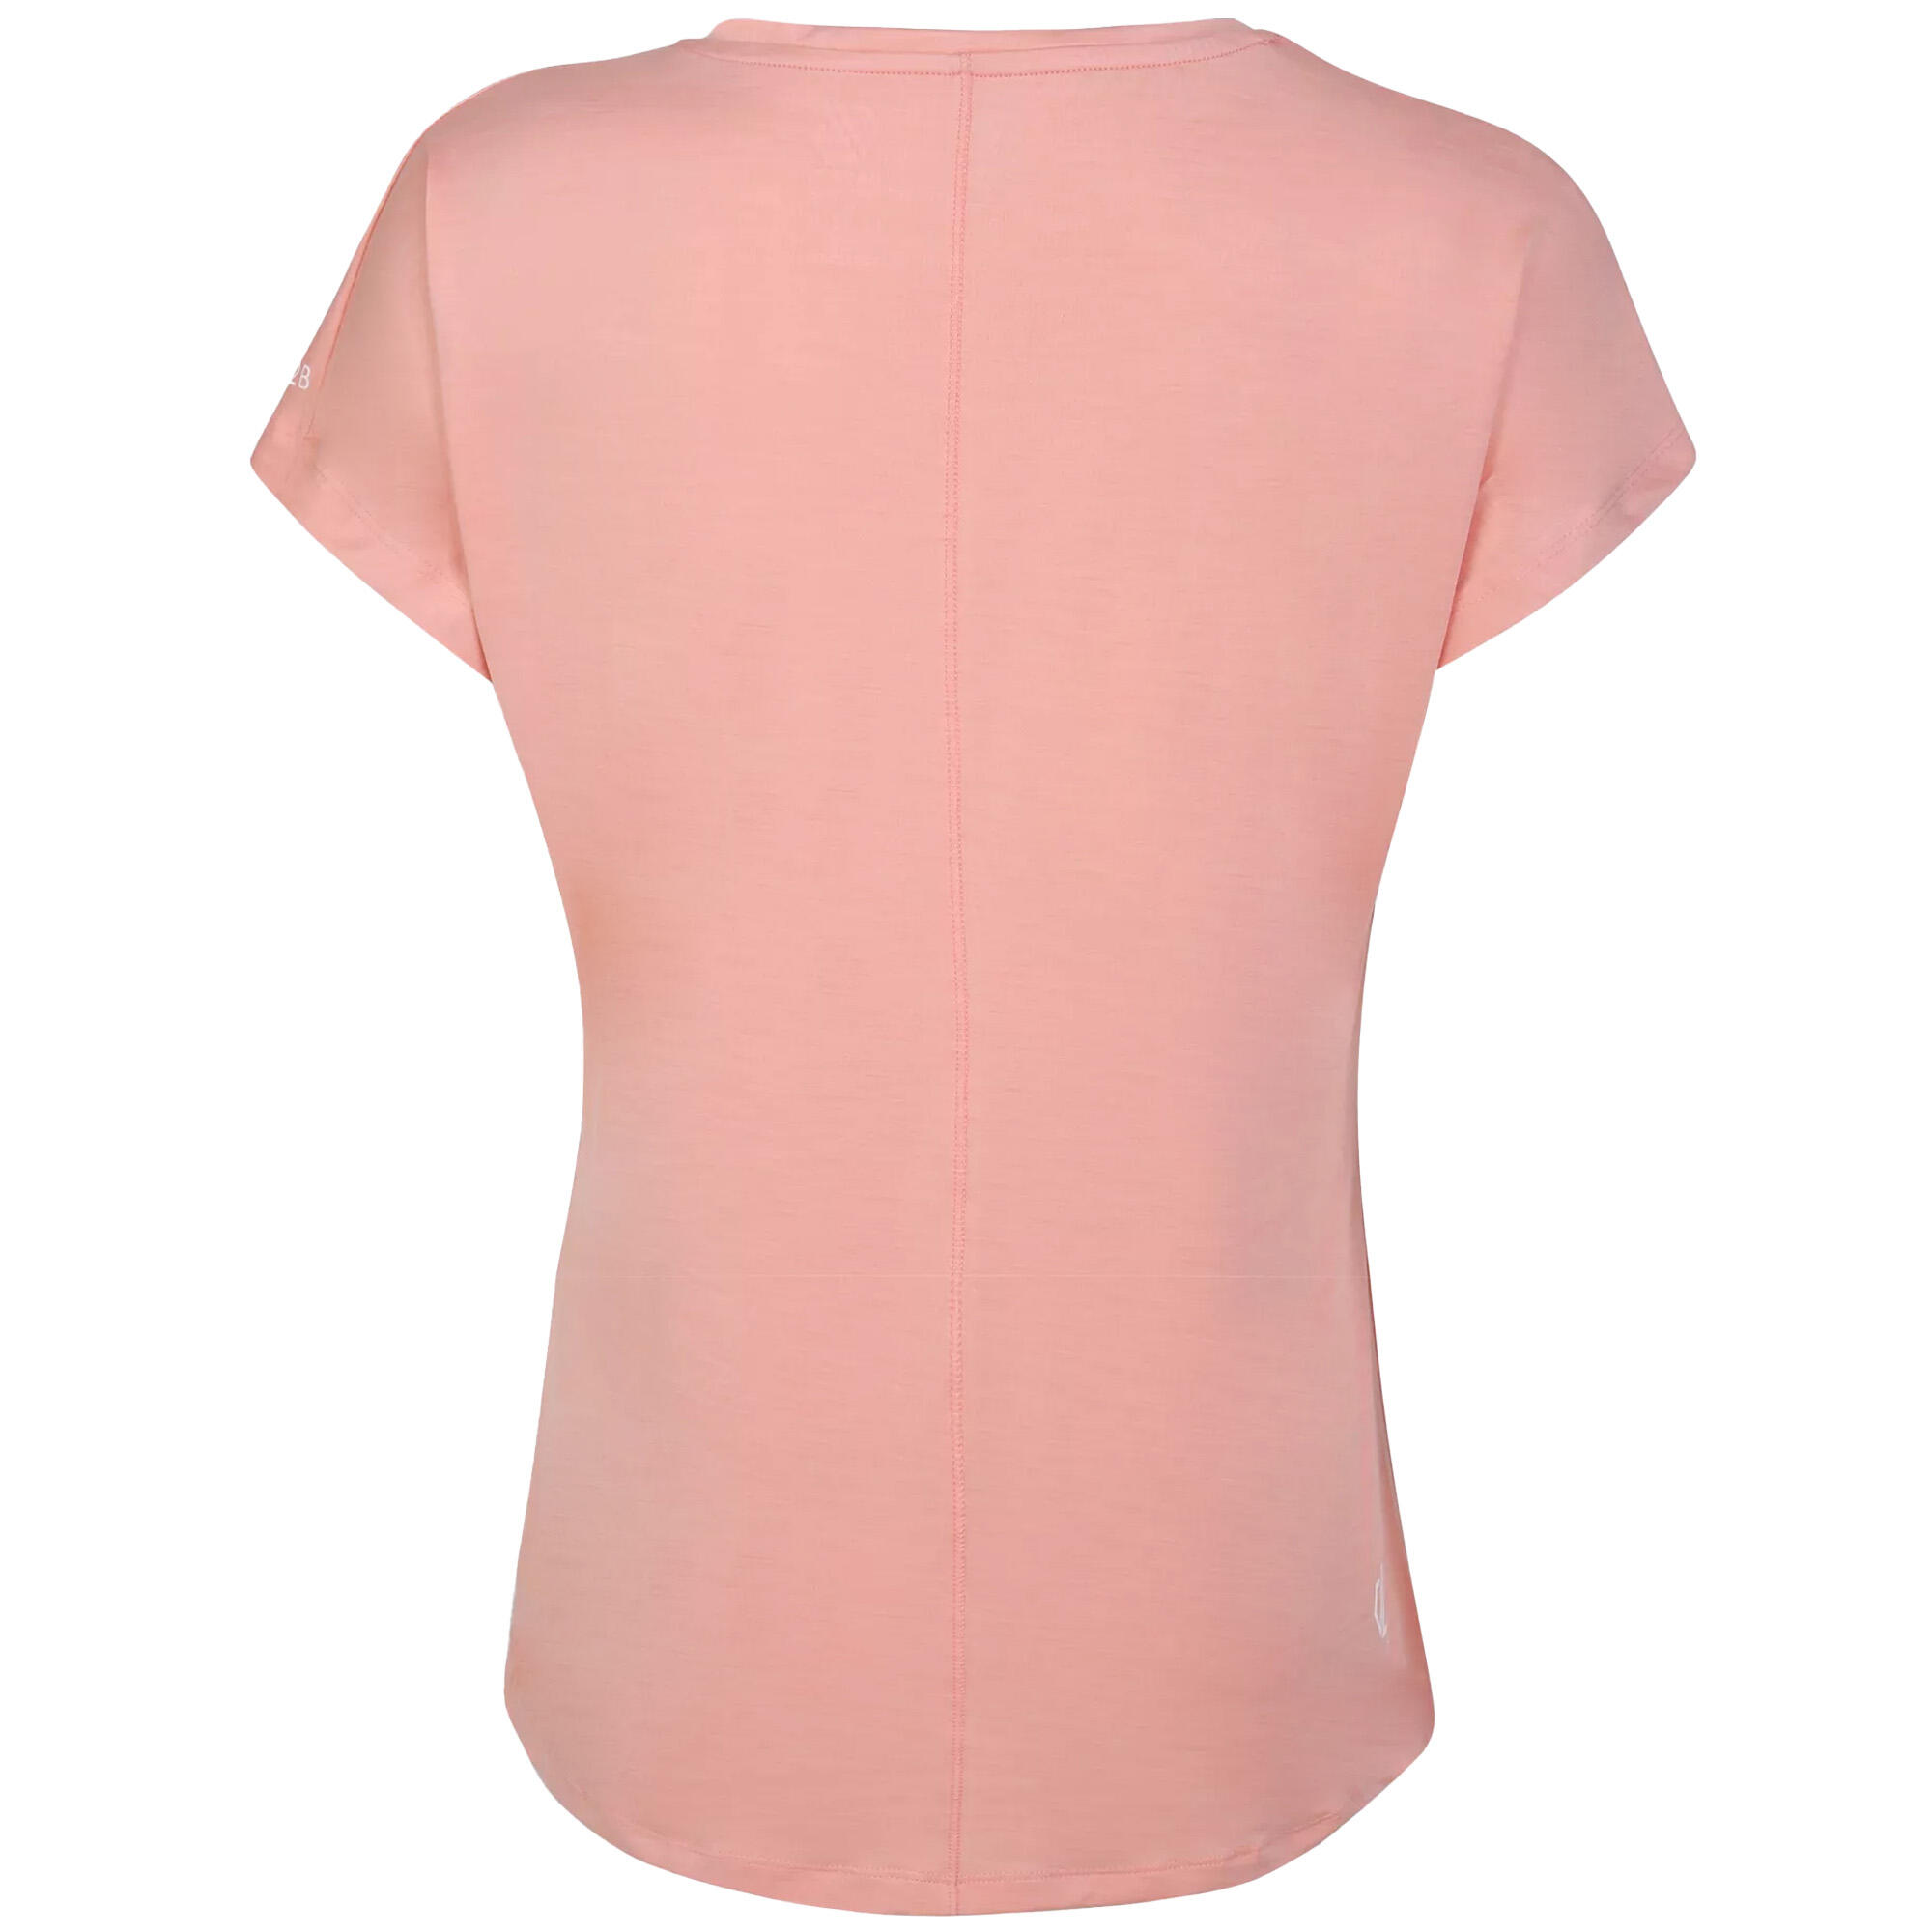 Womens/Ladies Active TShirt (Apricot Blush) 2/4